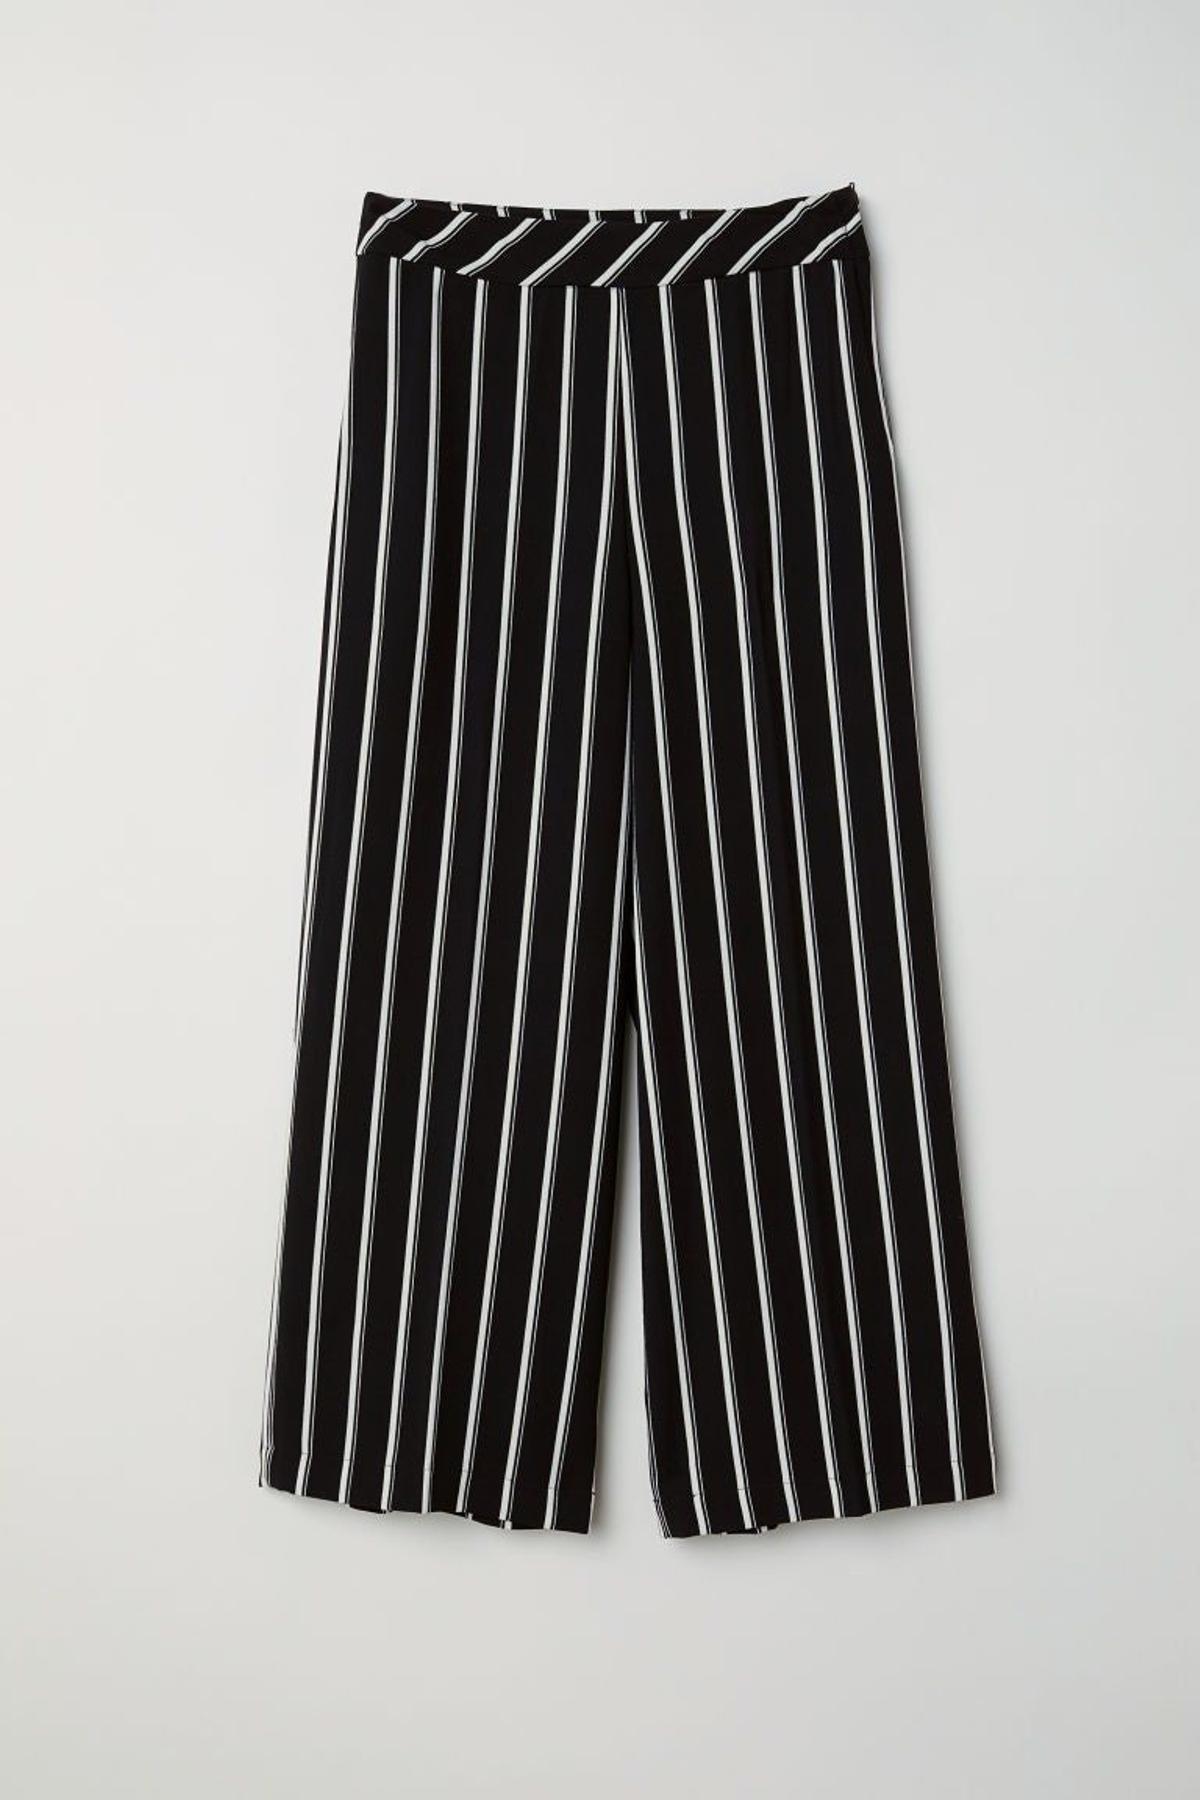 Pantalón negro a rayas de H&amp;M. (Precio: 16,99 euros)